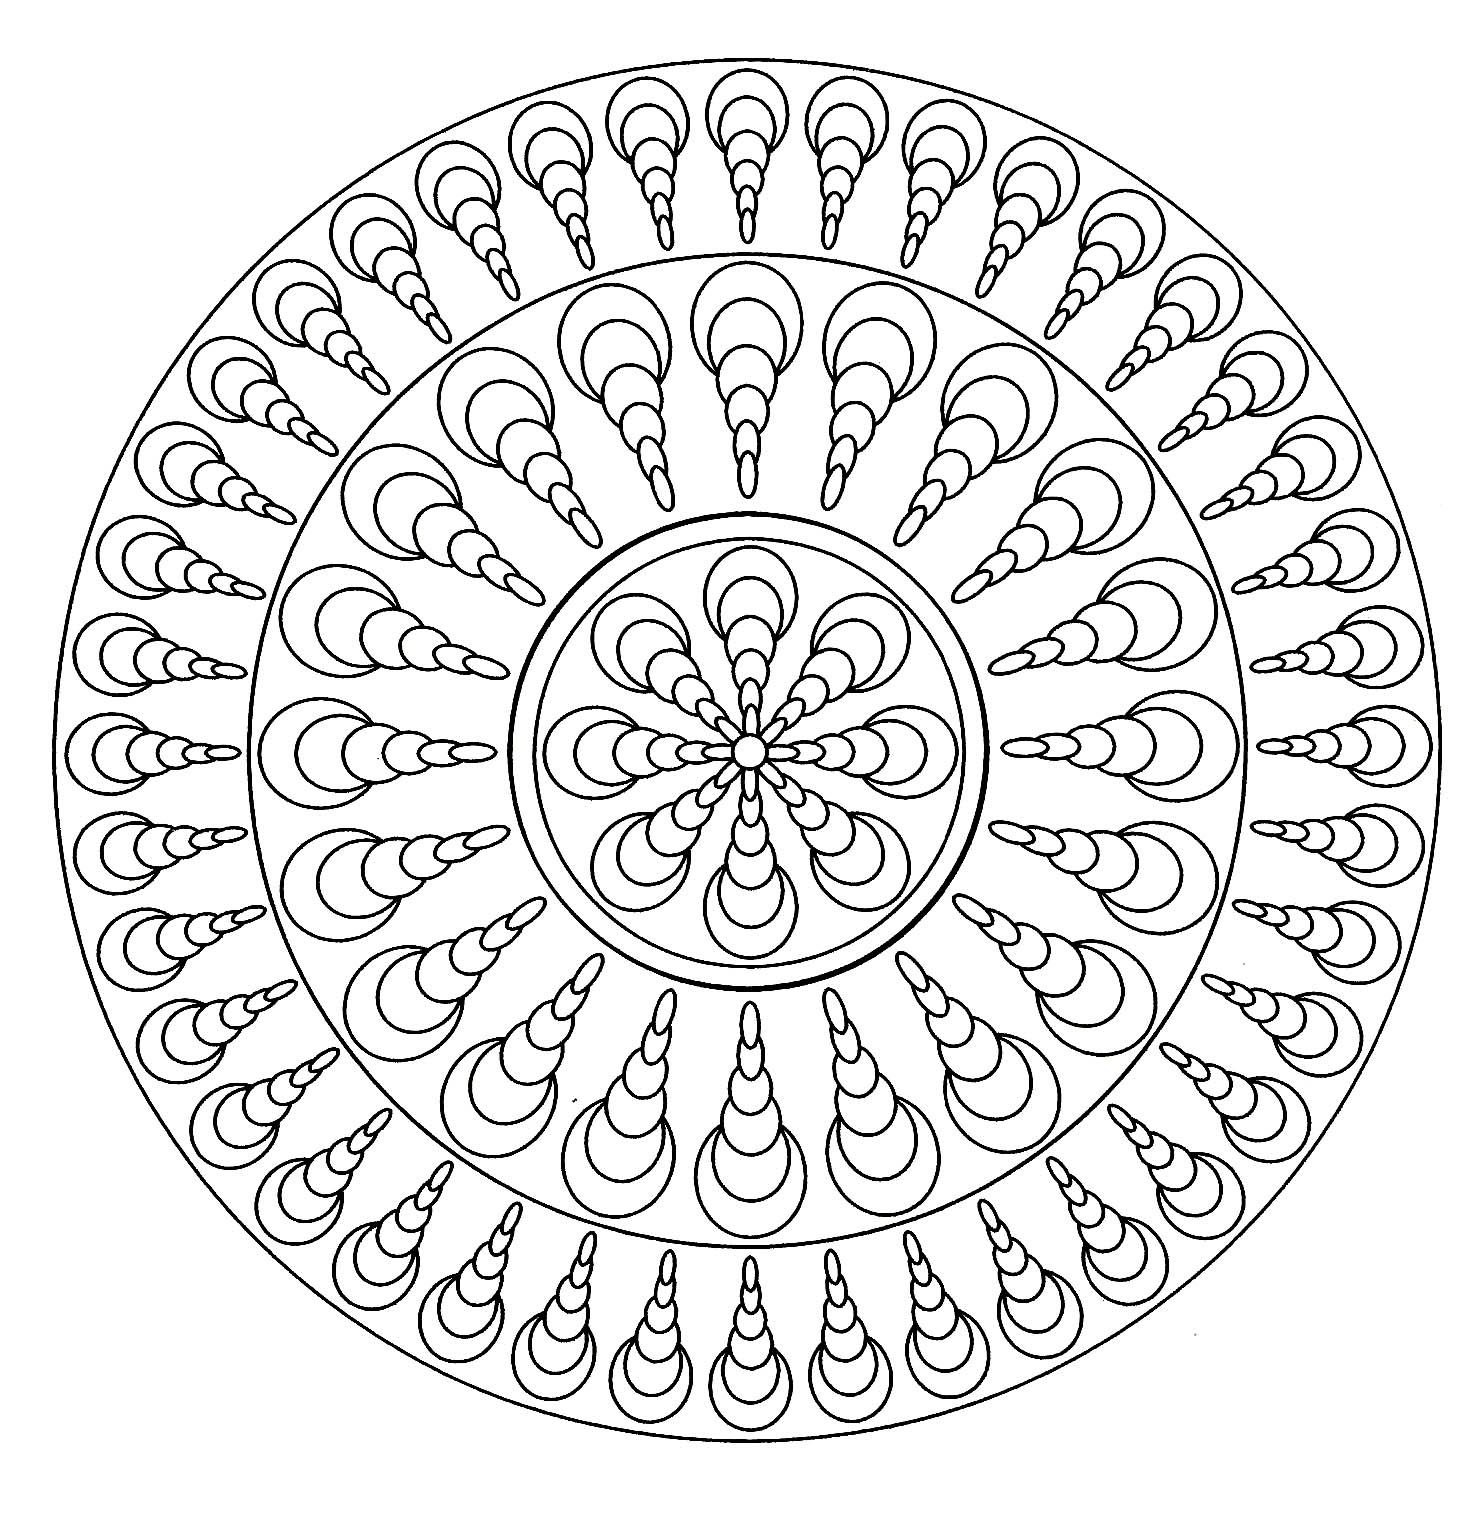 Mandala com conchas orientadas na mesma direção